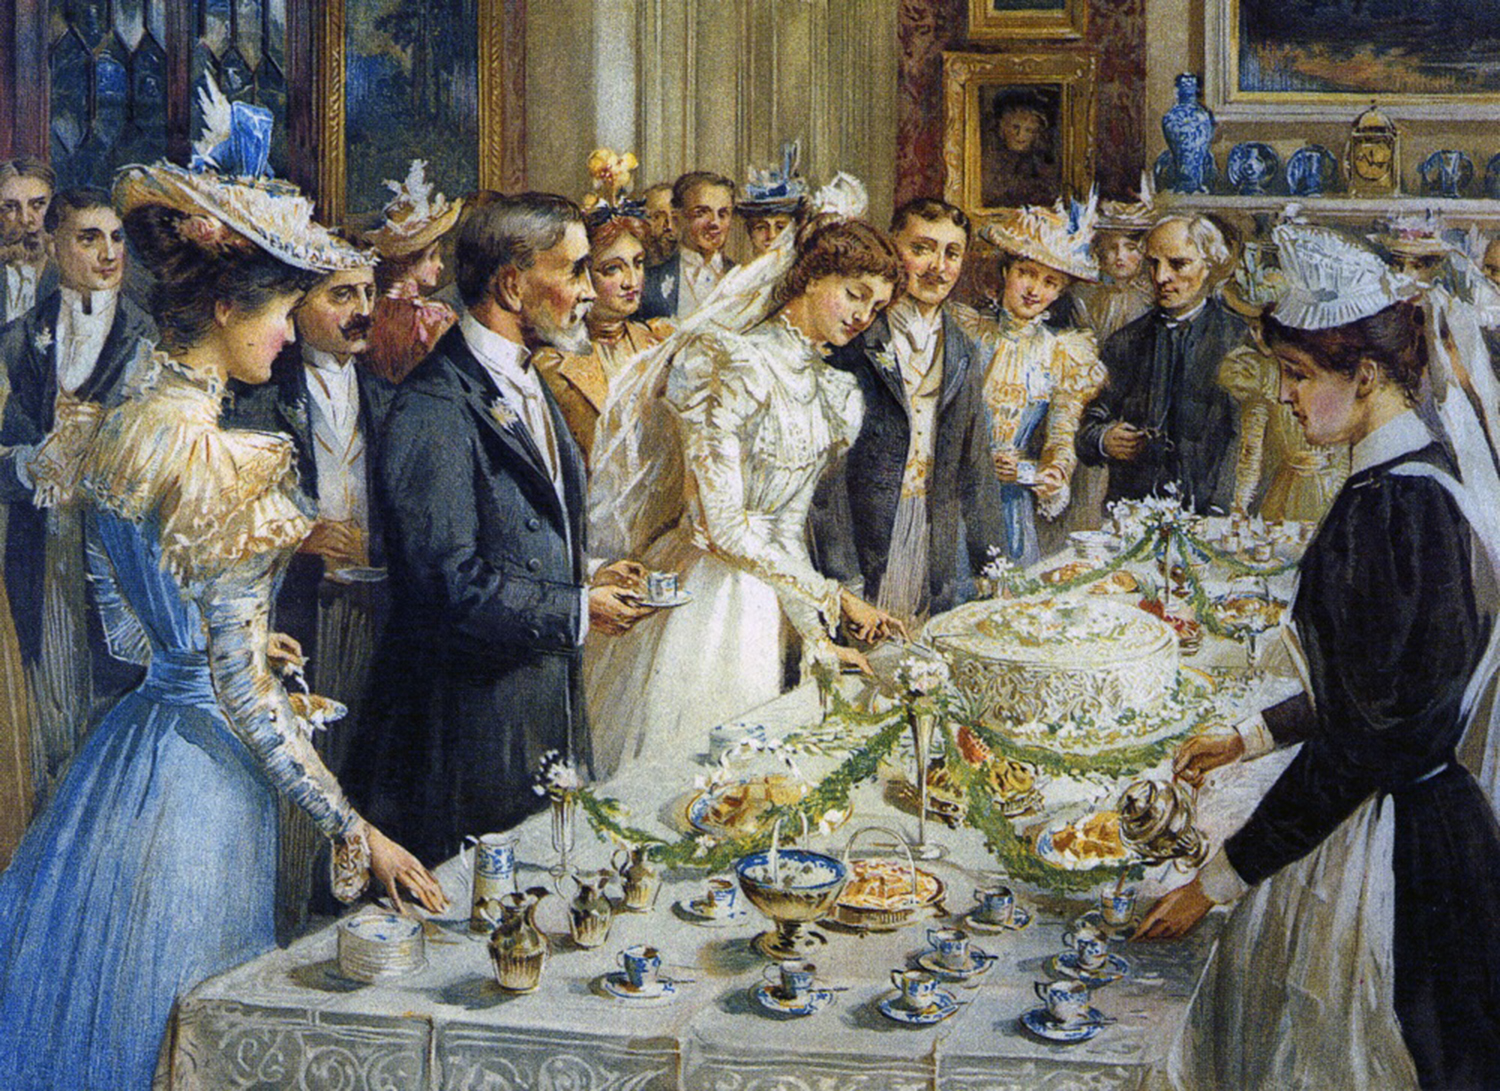 Вступление дворянства. Викторианская Англия бал картина живопись 19 век. Gabriel Charles Deneux (1856-1926) художник.